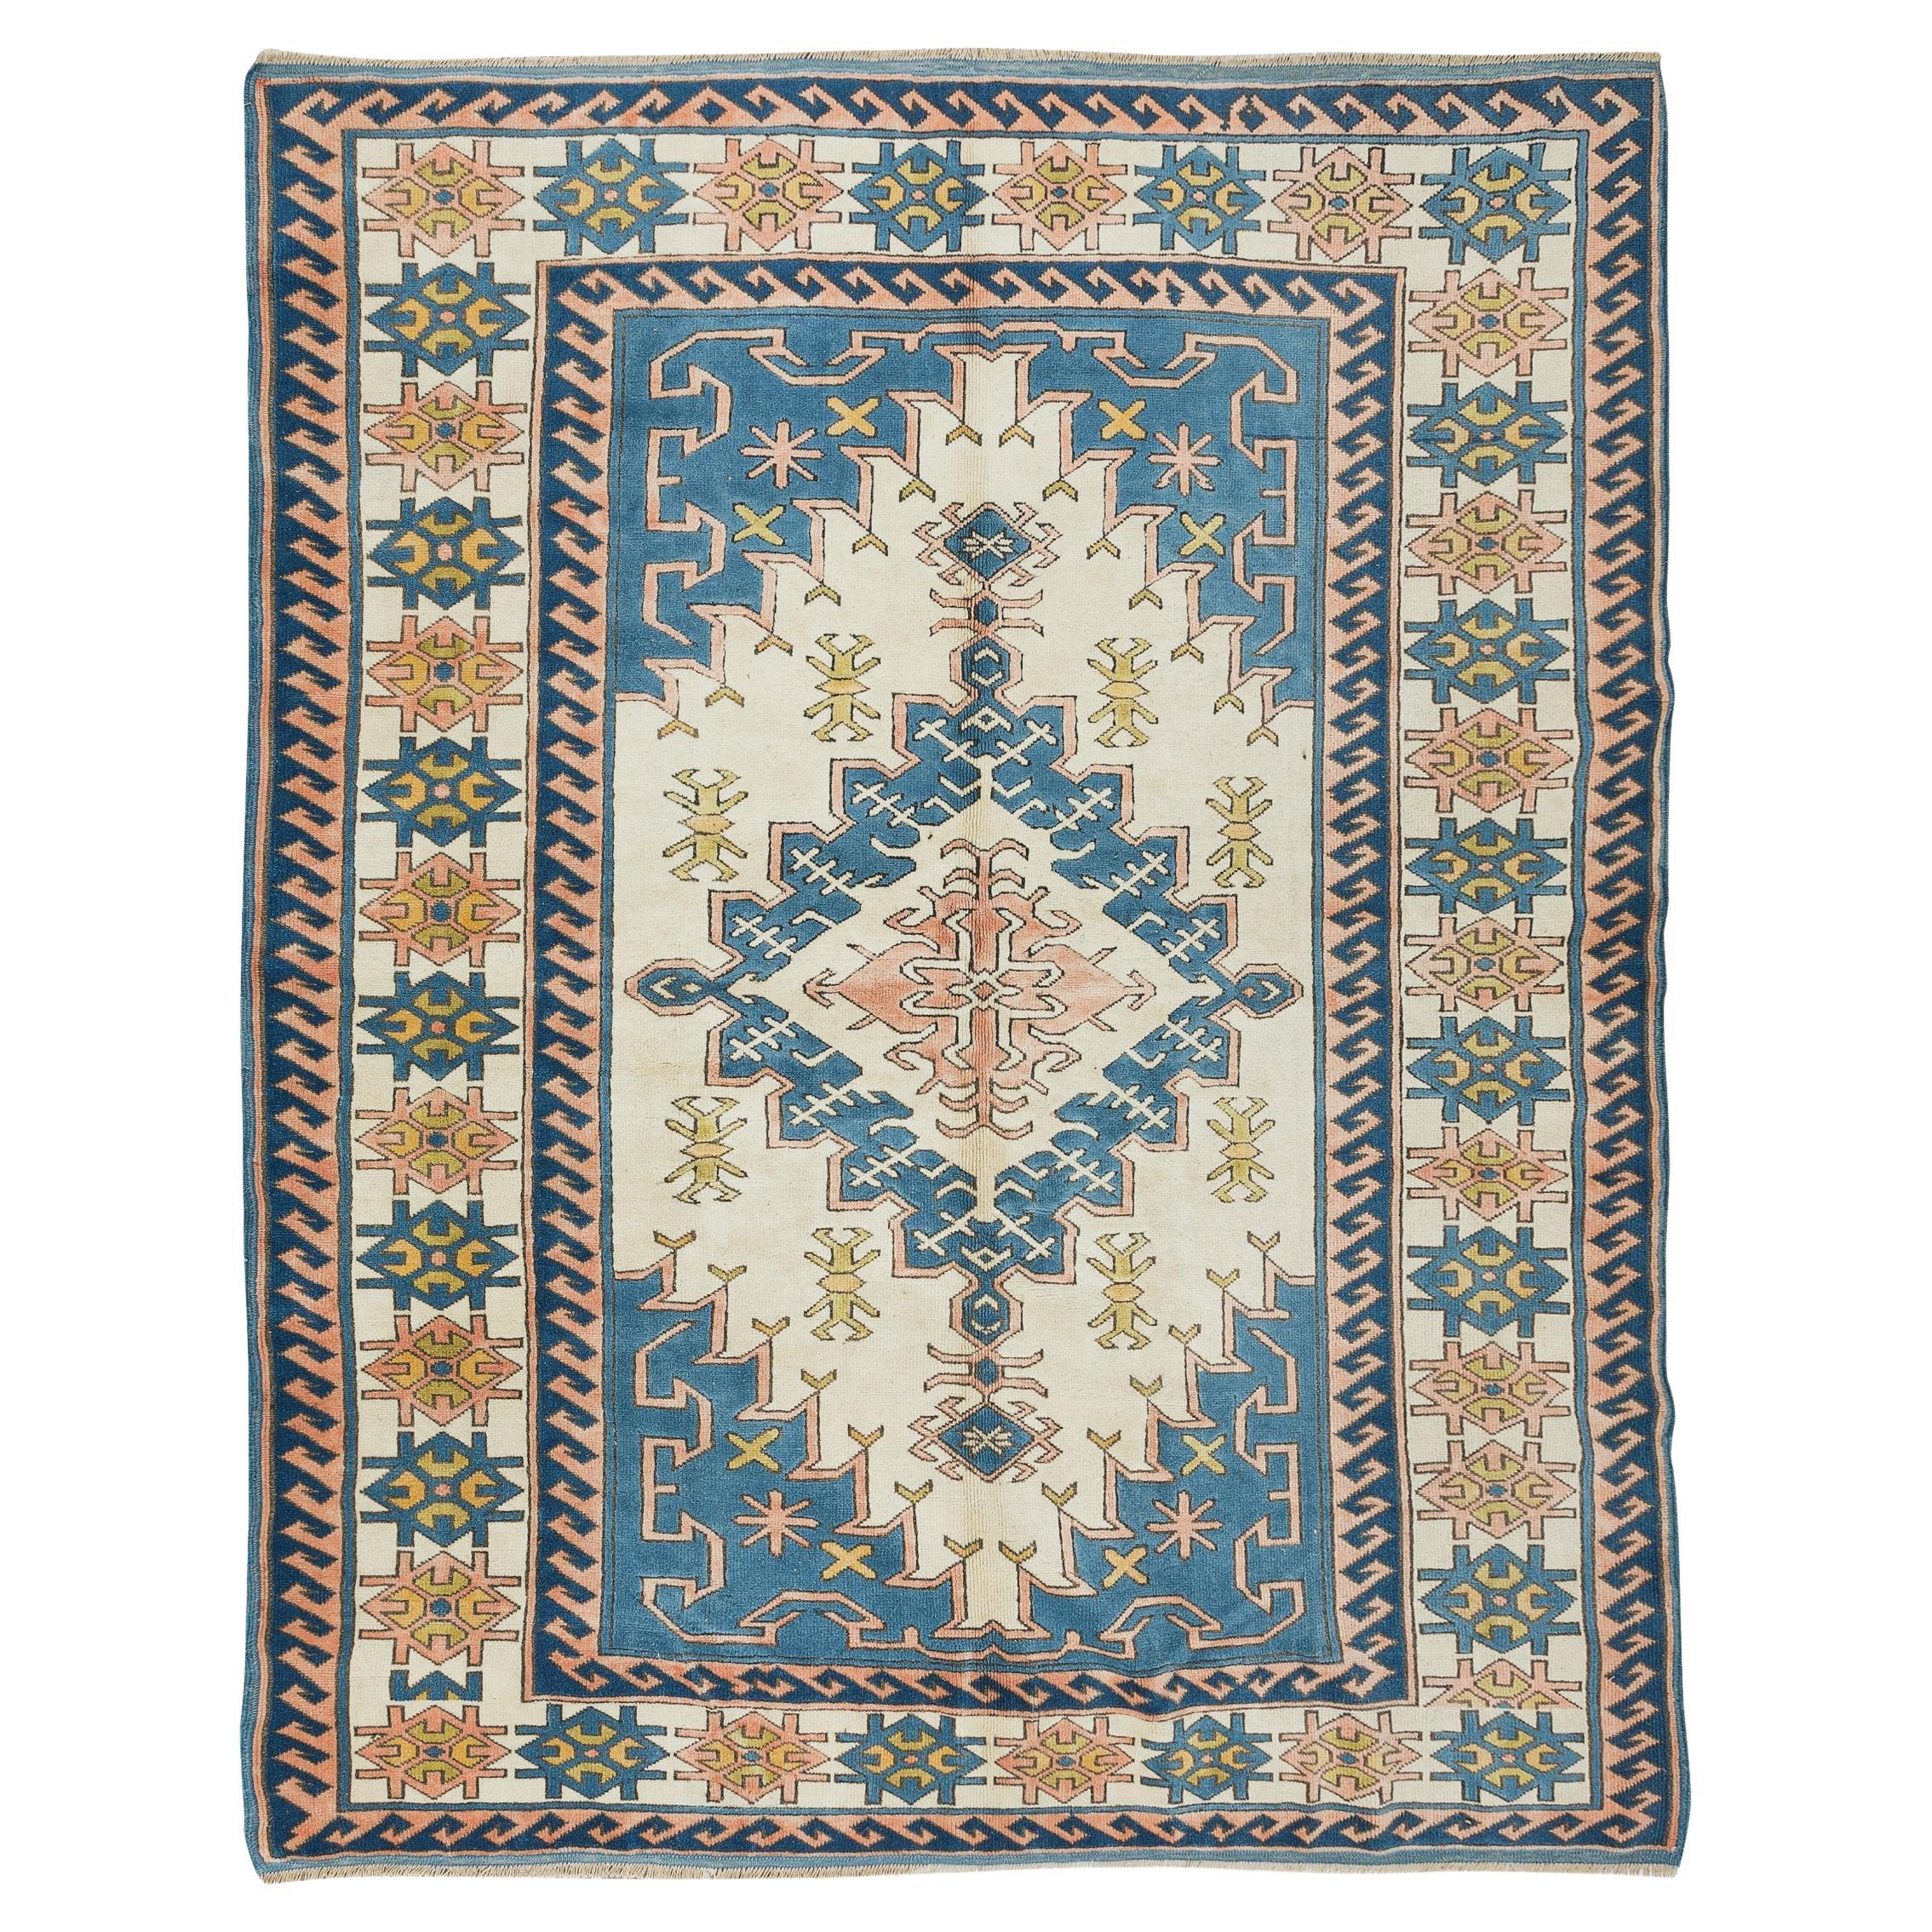 6.9x8.8 Ft Handgefertigter Teppich, moderner türkischer Teppich für Wohnzimmerdekor